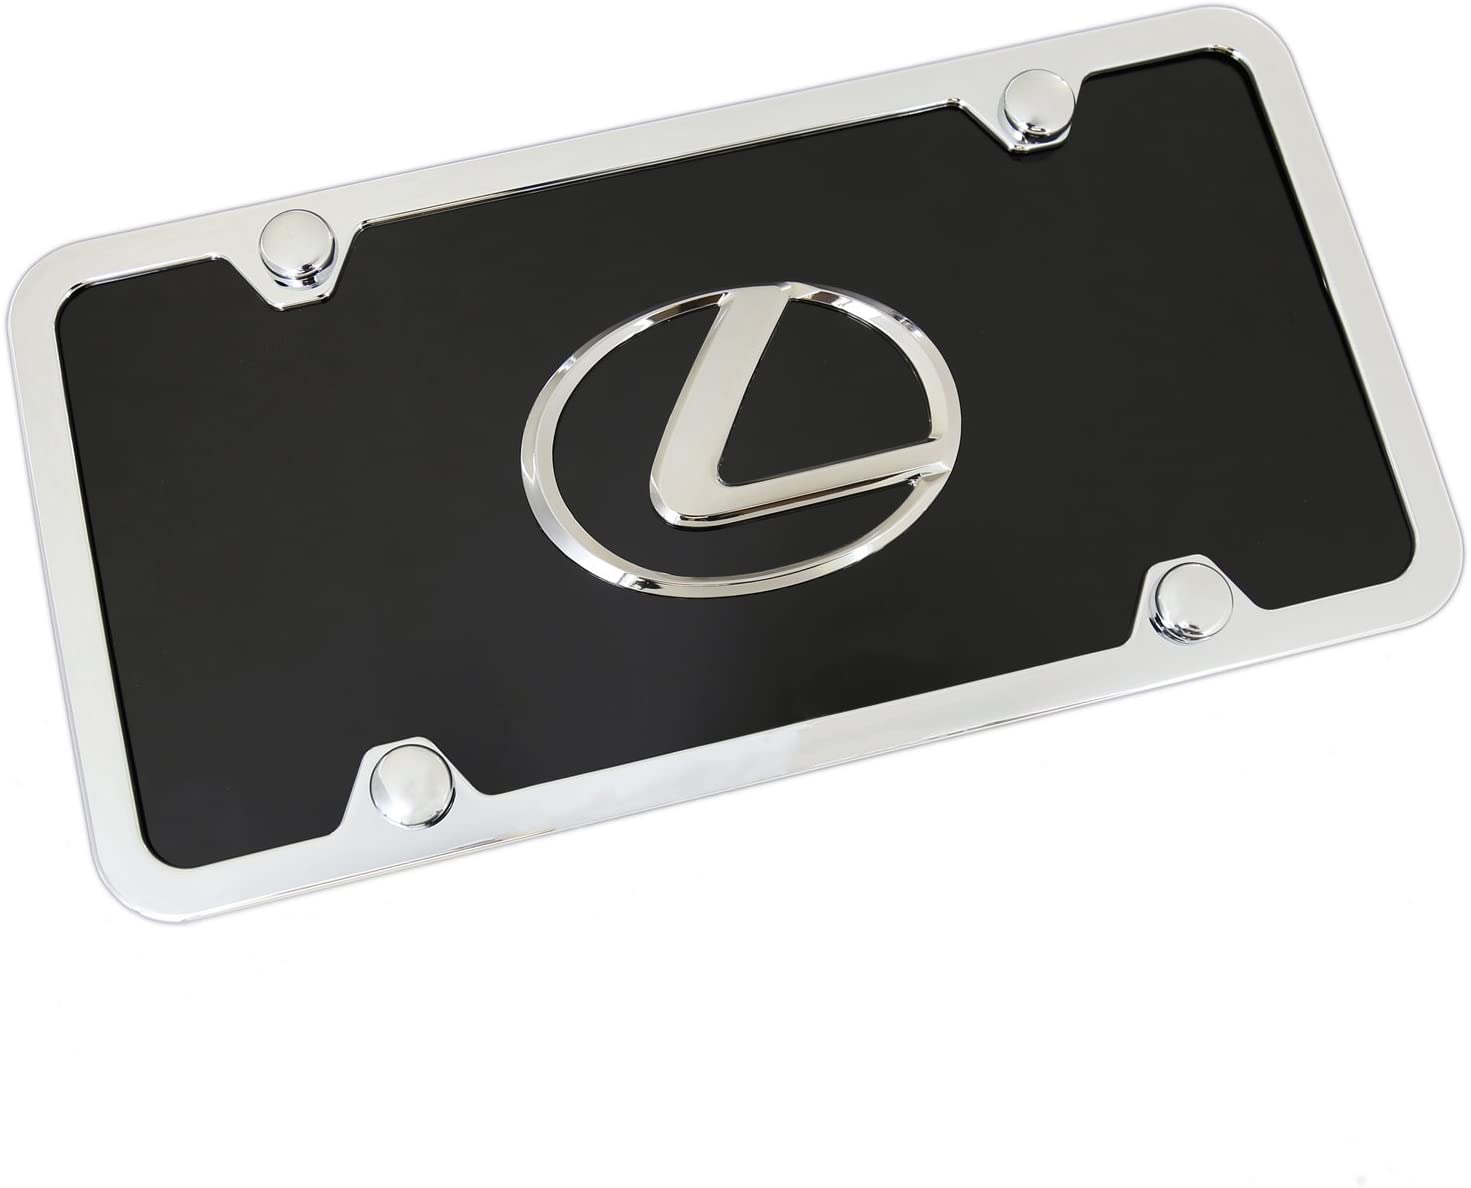 Lexus Chrome Logo On Black License Plate Frame